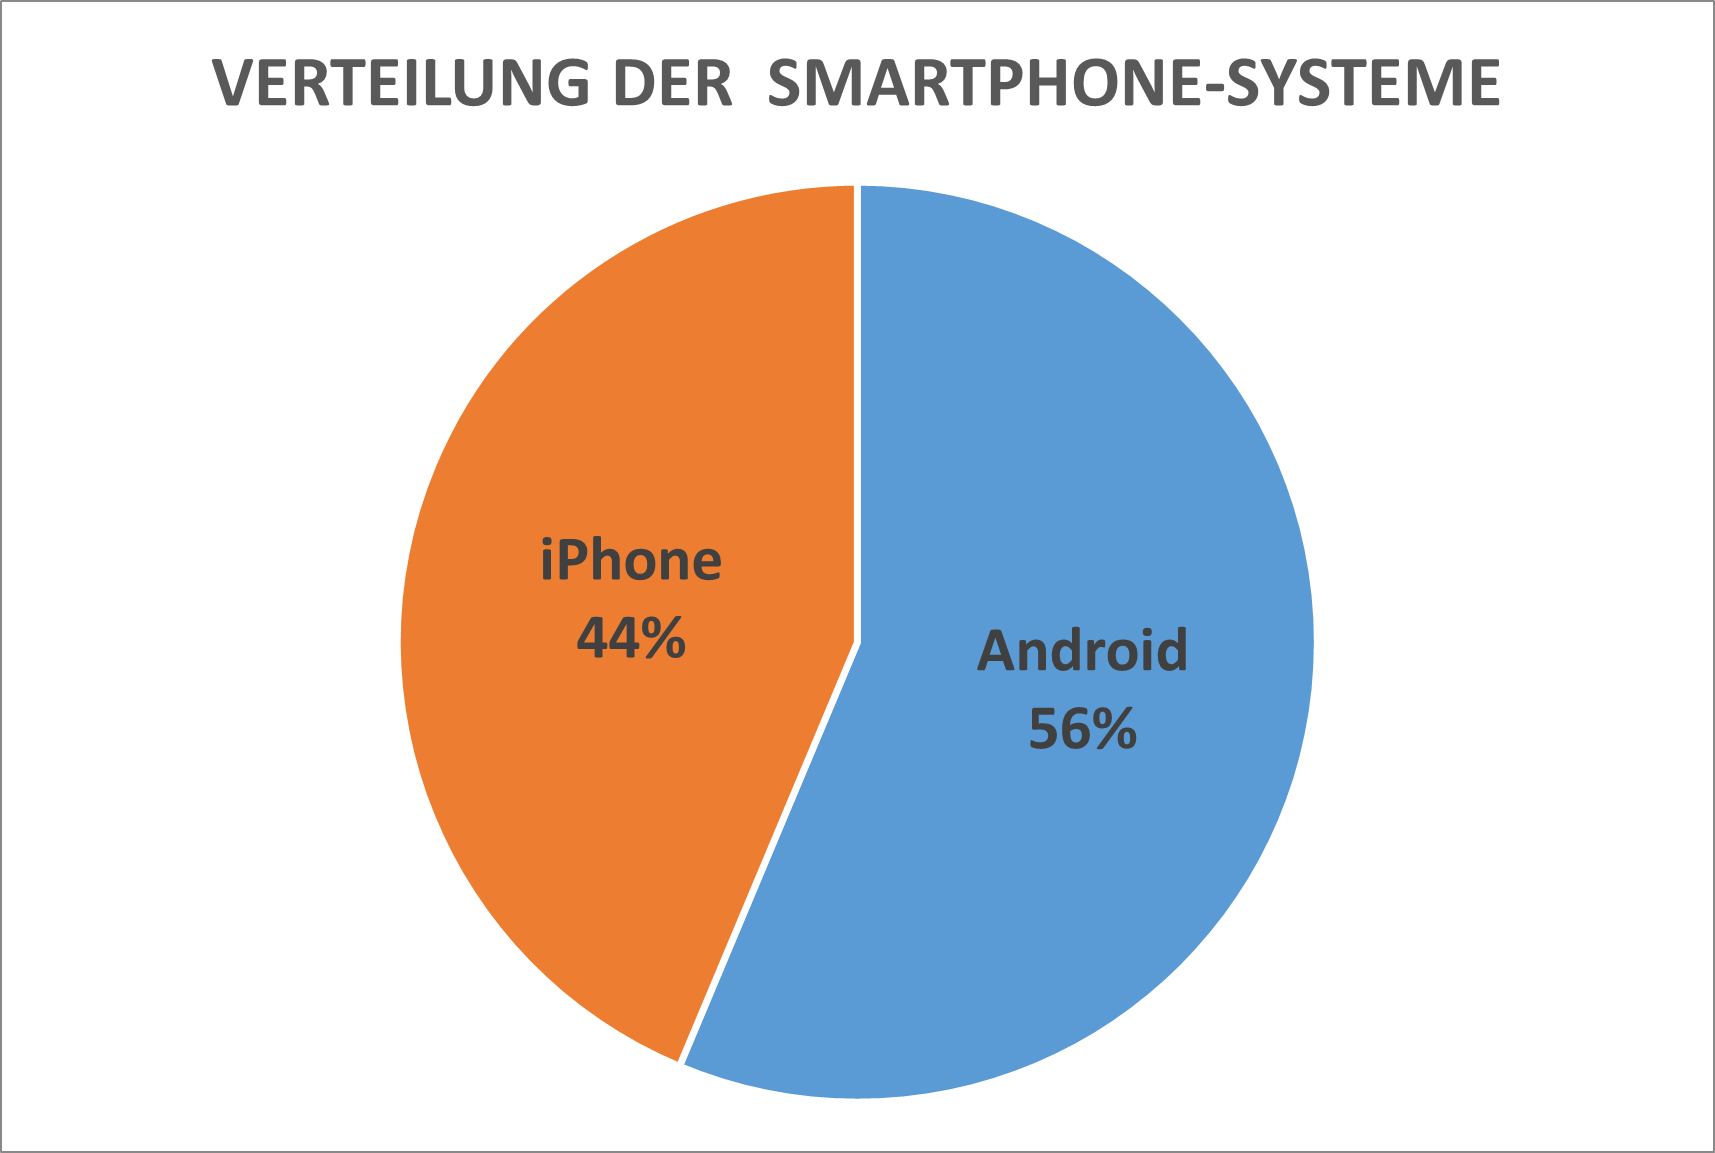 Von den Teilnehmenden nutzen 44% ein iPhone und 56% ein Android-Smartphone